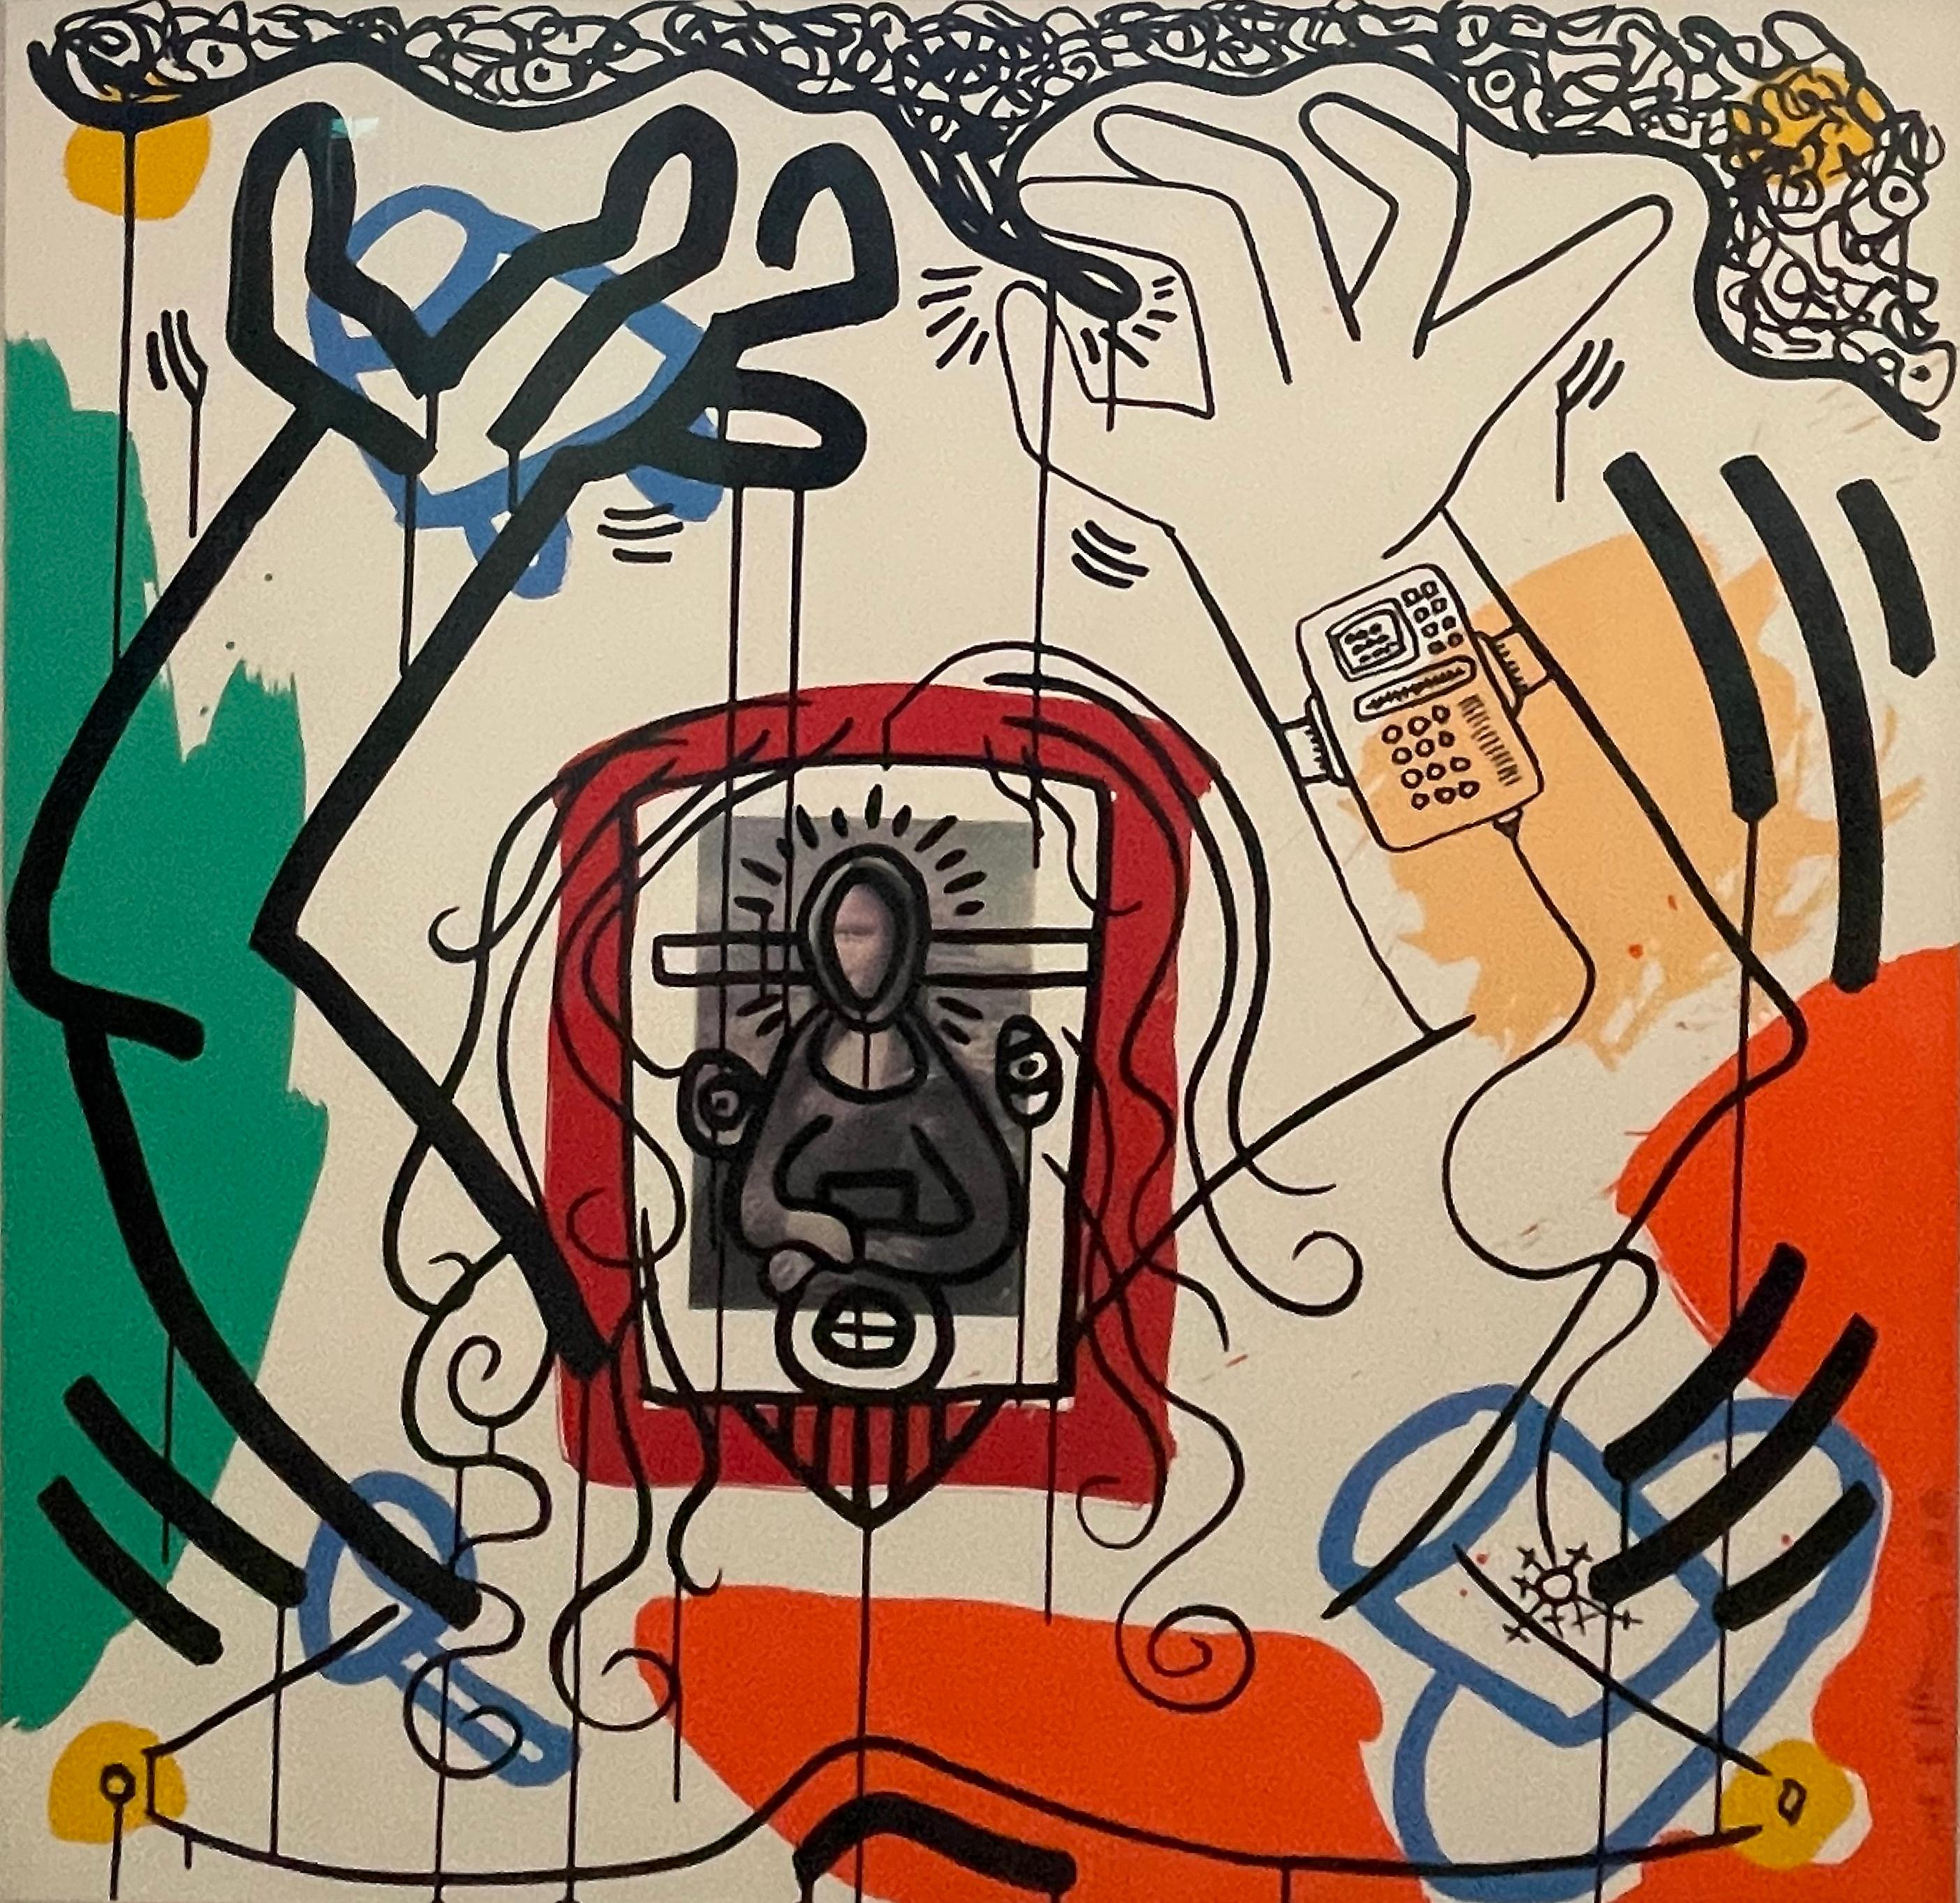 Apokalypse 6 – Print von Keith Haring